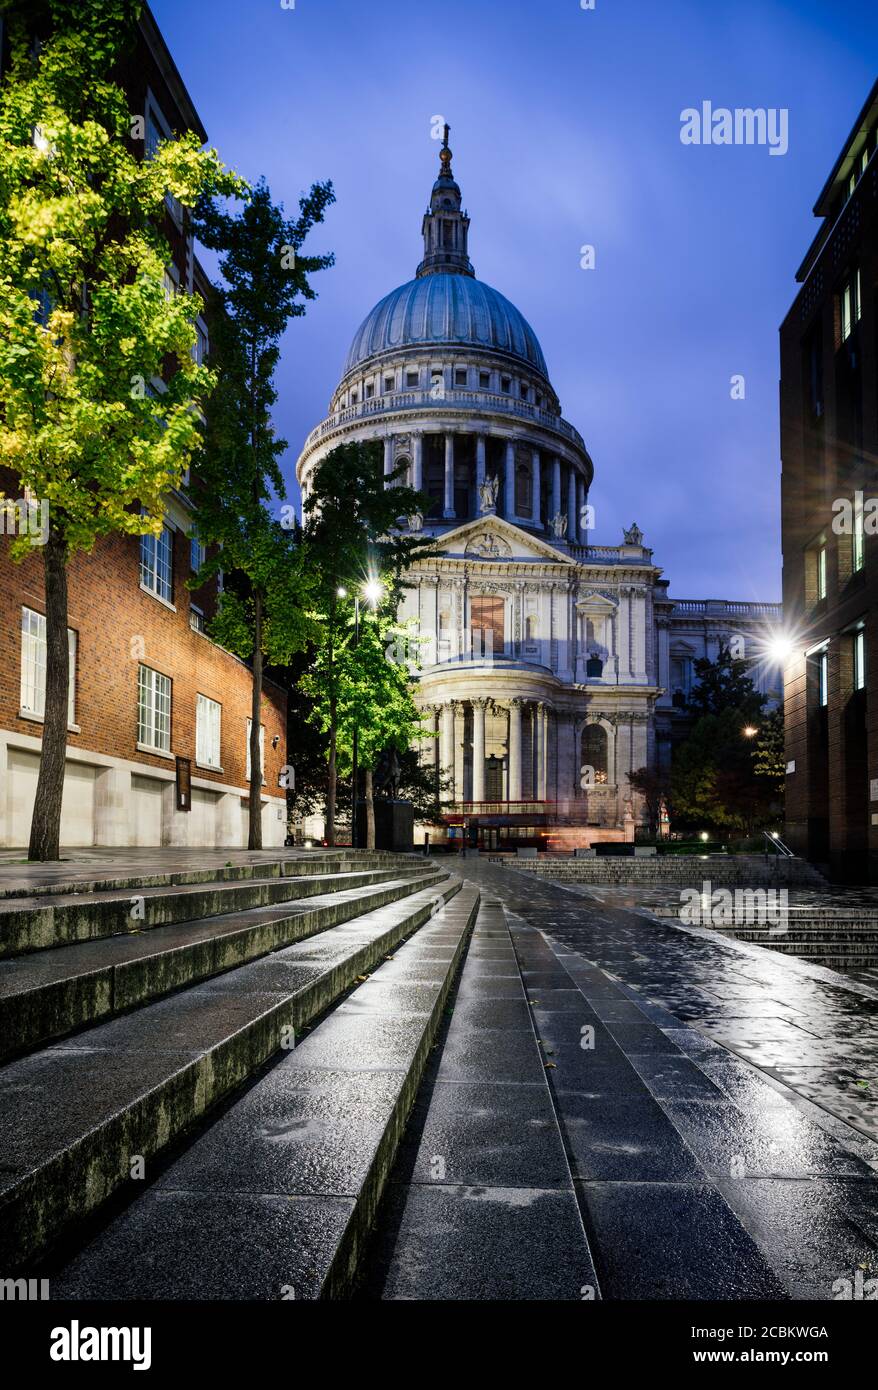 Vue de nuit sur la cathédrale St Pauls, Londres, Royaume-Uni Banque D'Images